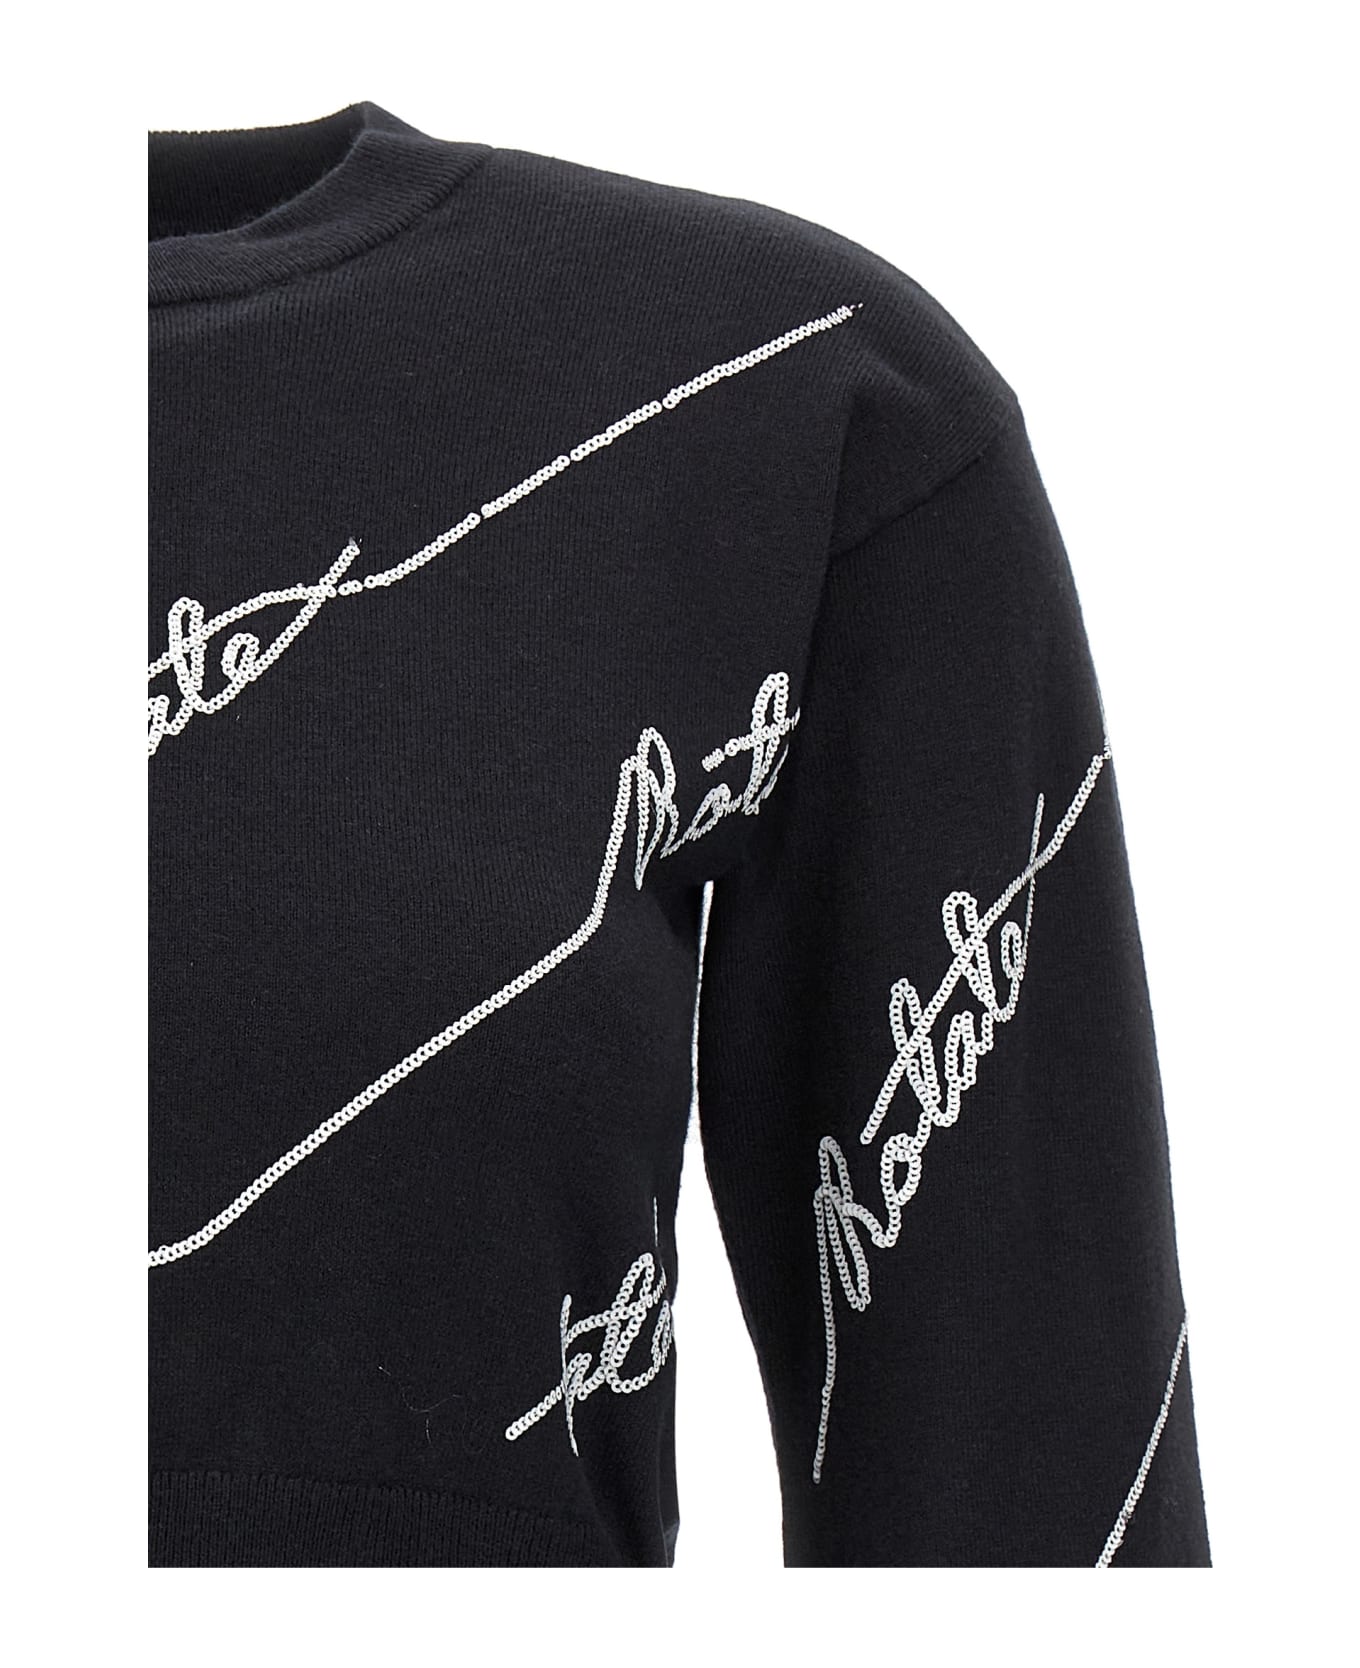 Rotate by Birger Christensen 'sequin Logo' Sweater - White/Black ニットウェア